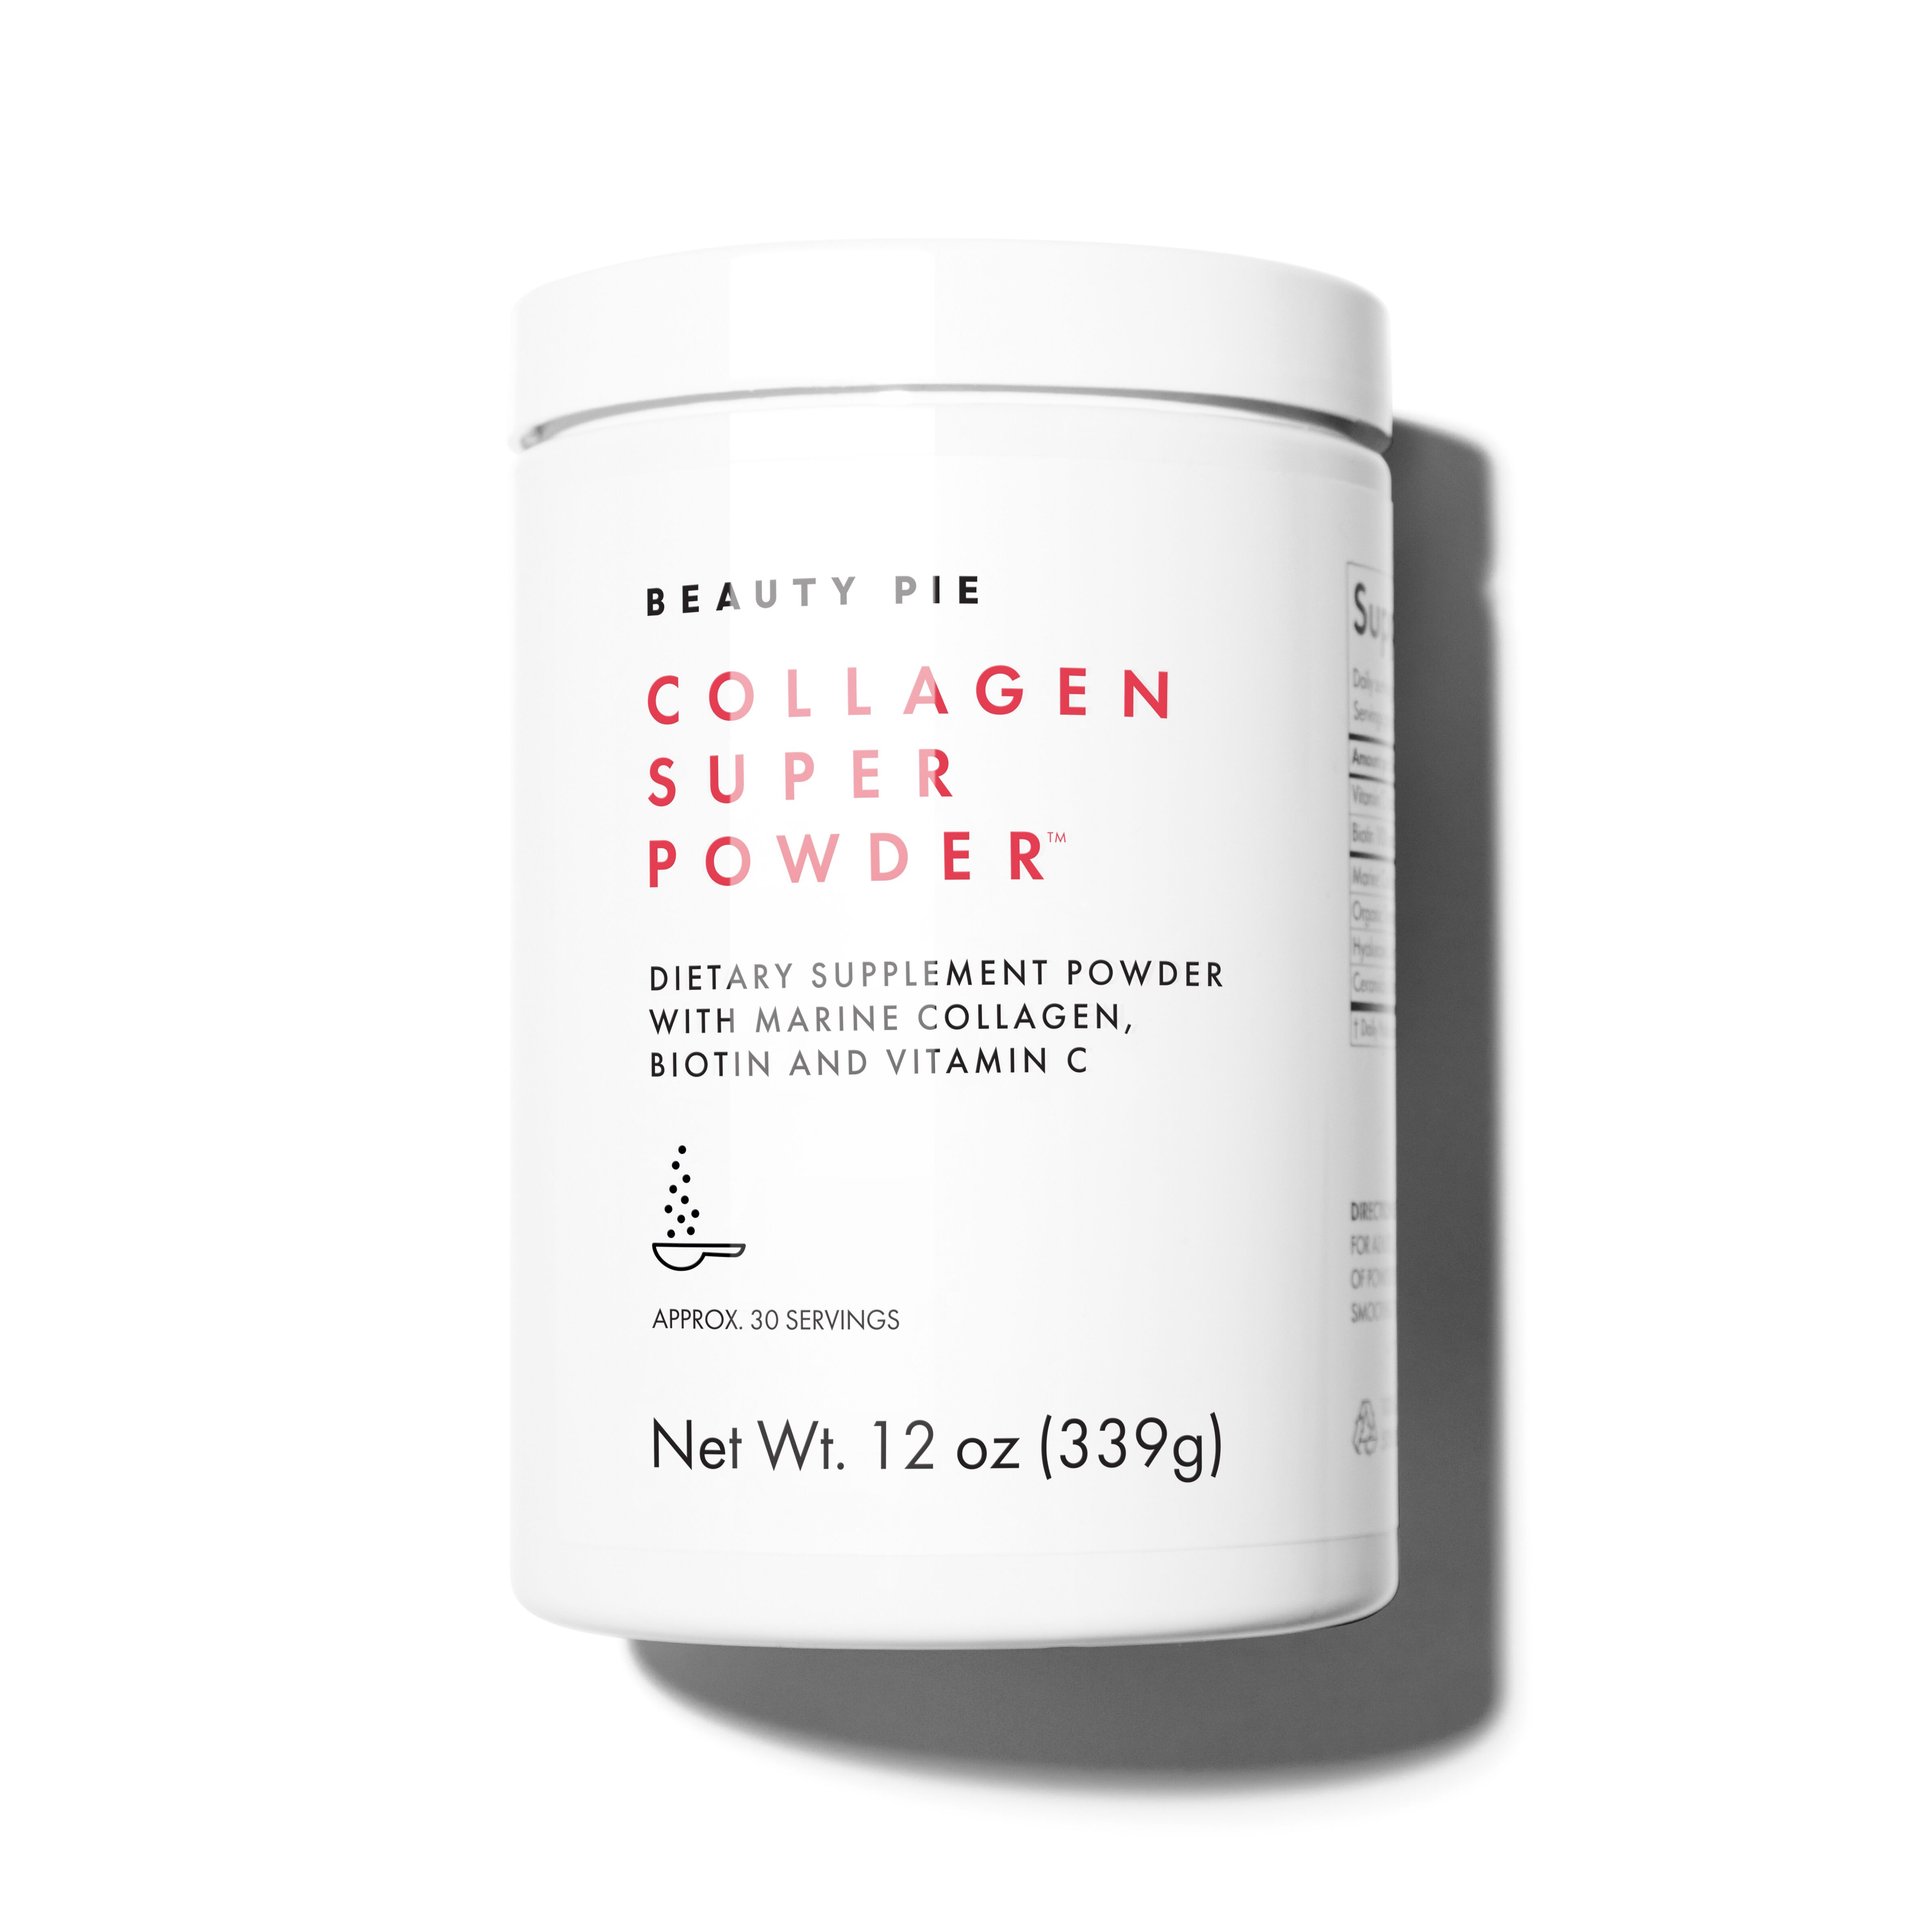 Collagen Super Powder™ Dietary Supplement Powder With Marine Collagen, Biotin And Vitamin C